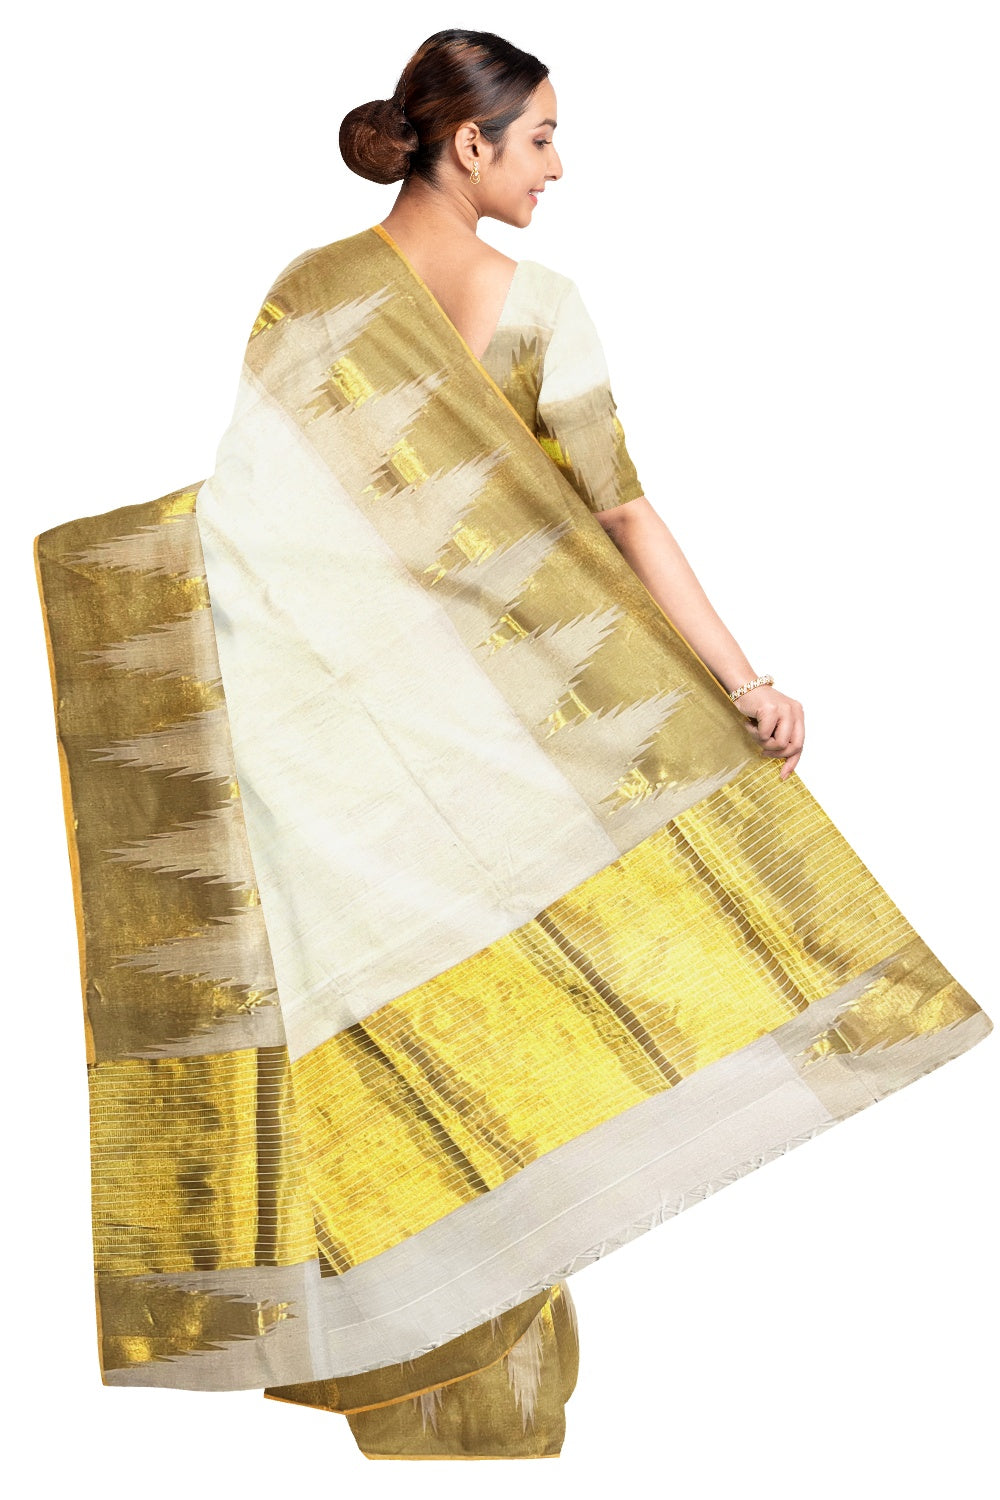 Southloom™ Original Handloom Kasavu Cotton Saree with Unique Temple Design Border